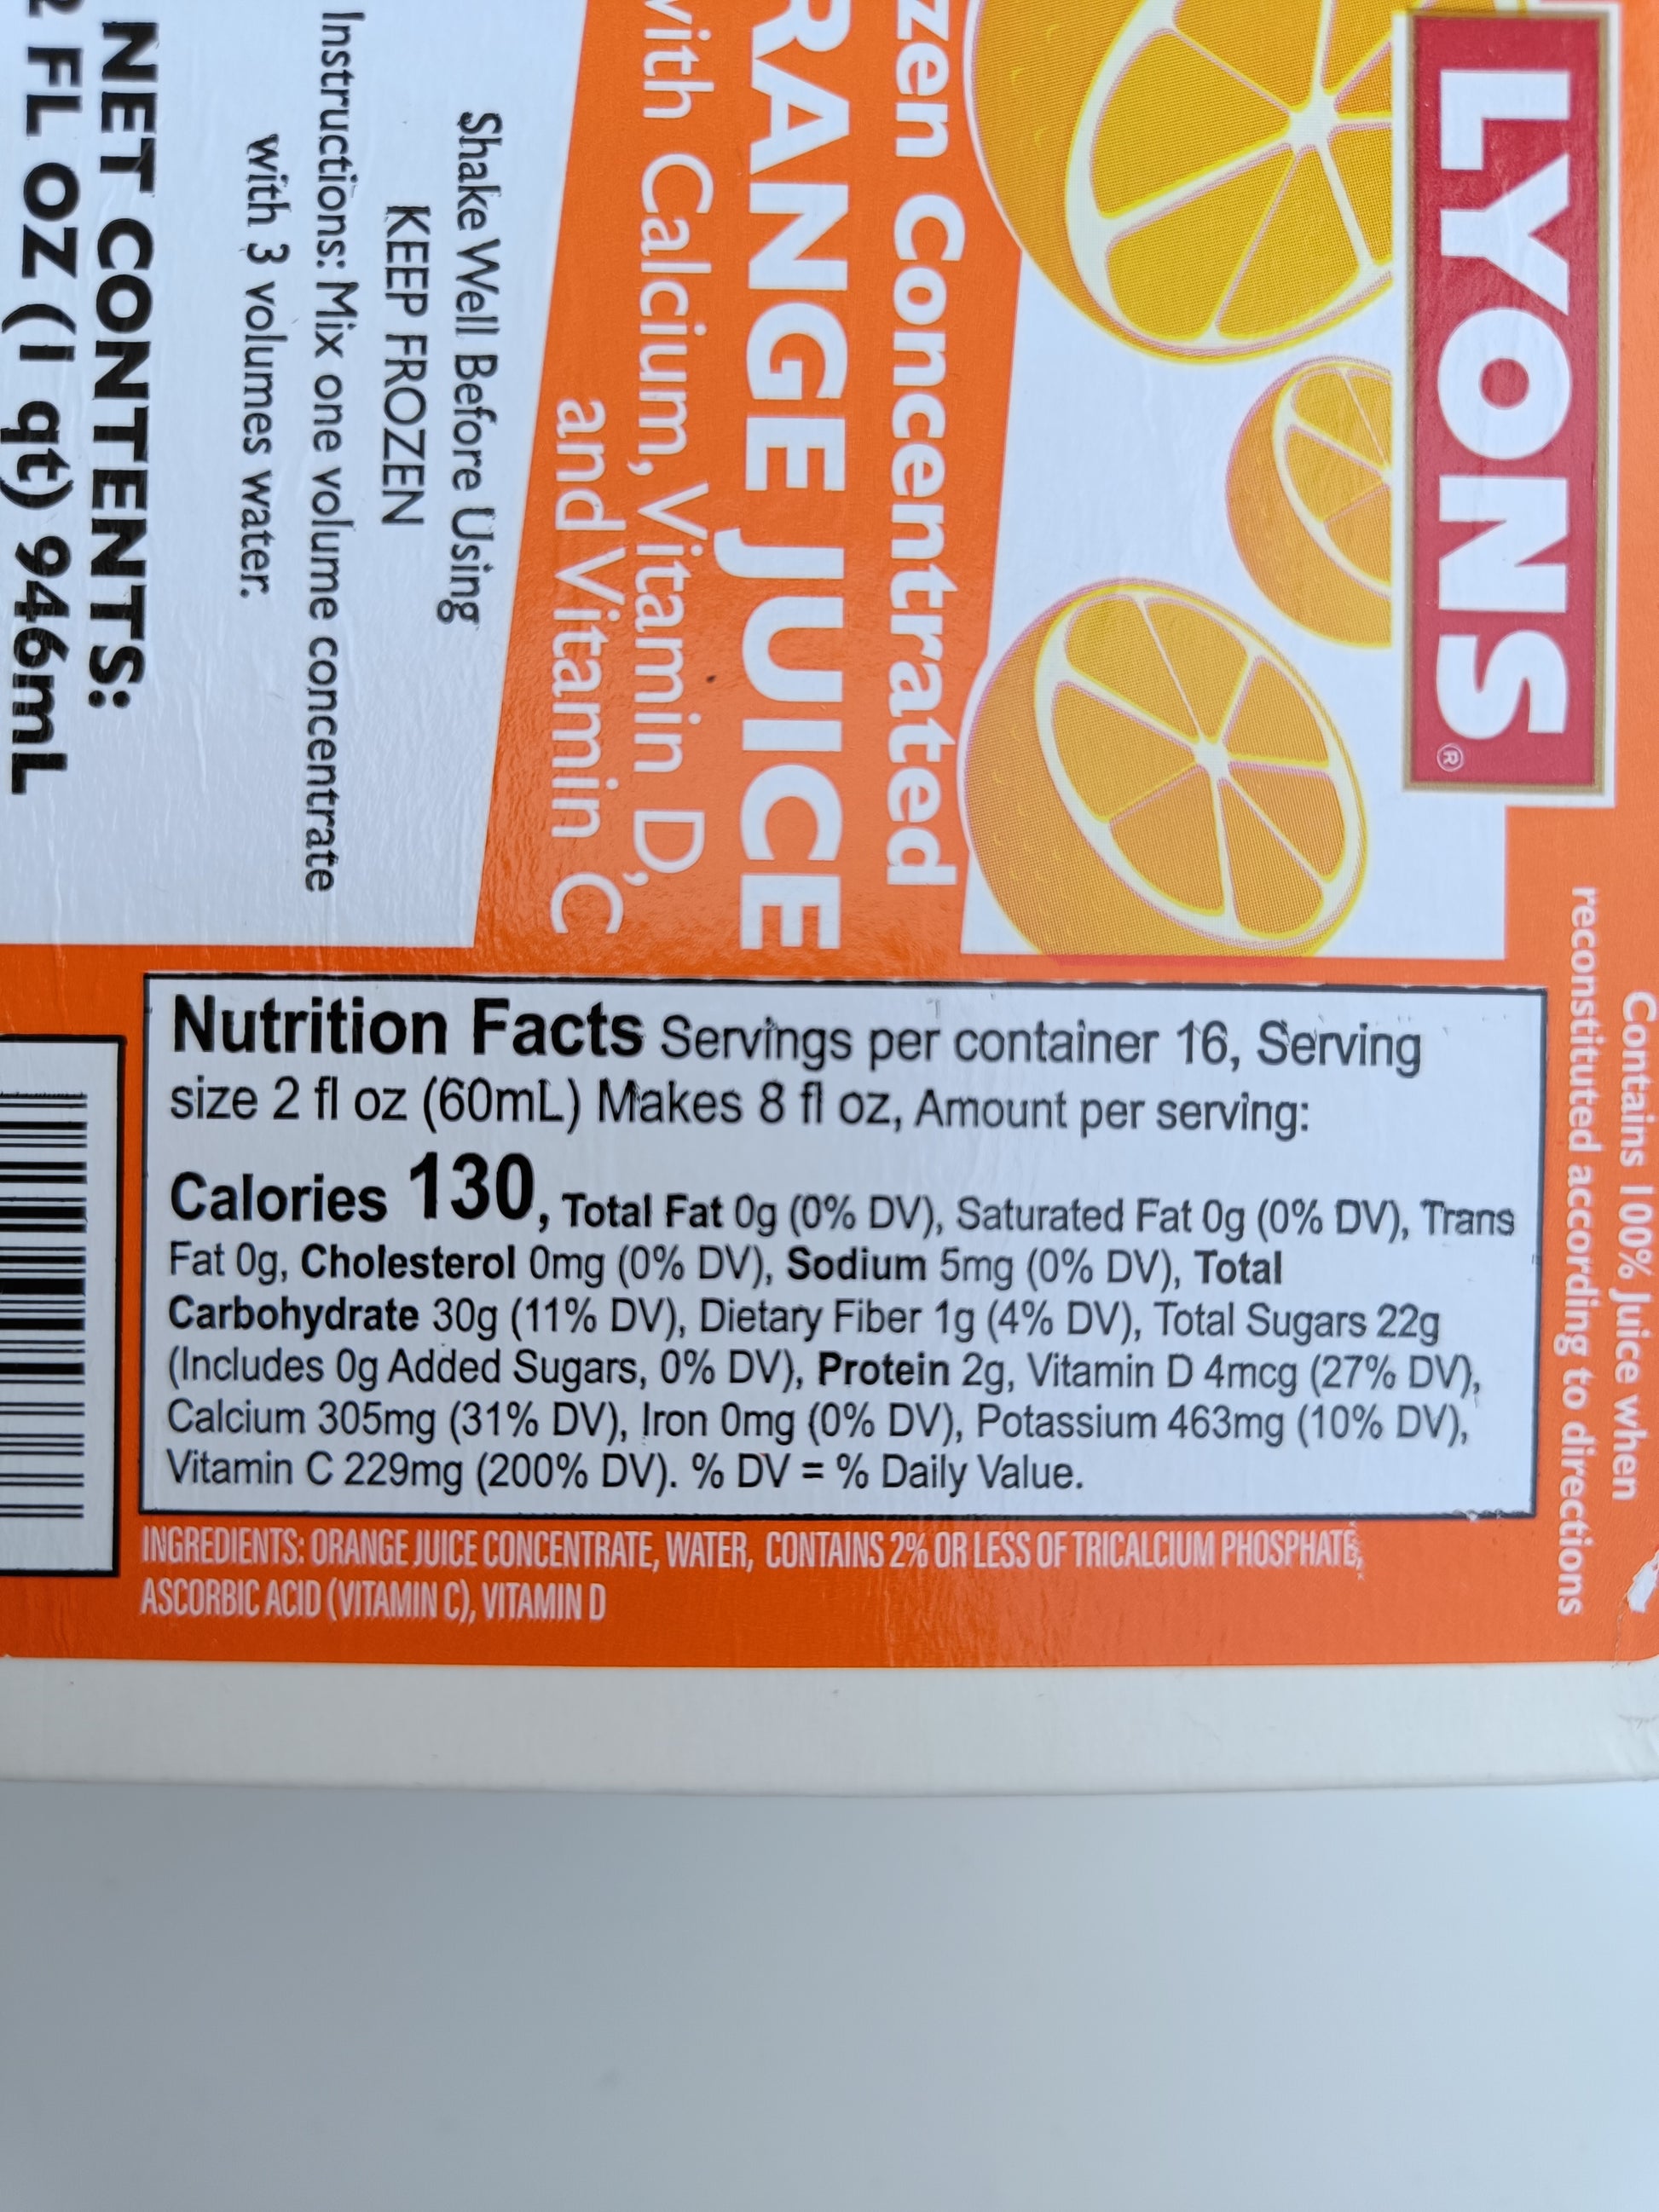 US džus koncentrát - složení a nutriční hodnoty pomerančové varianty